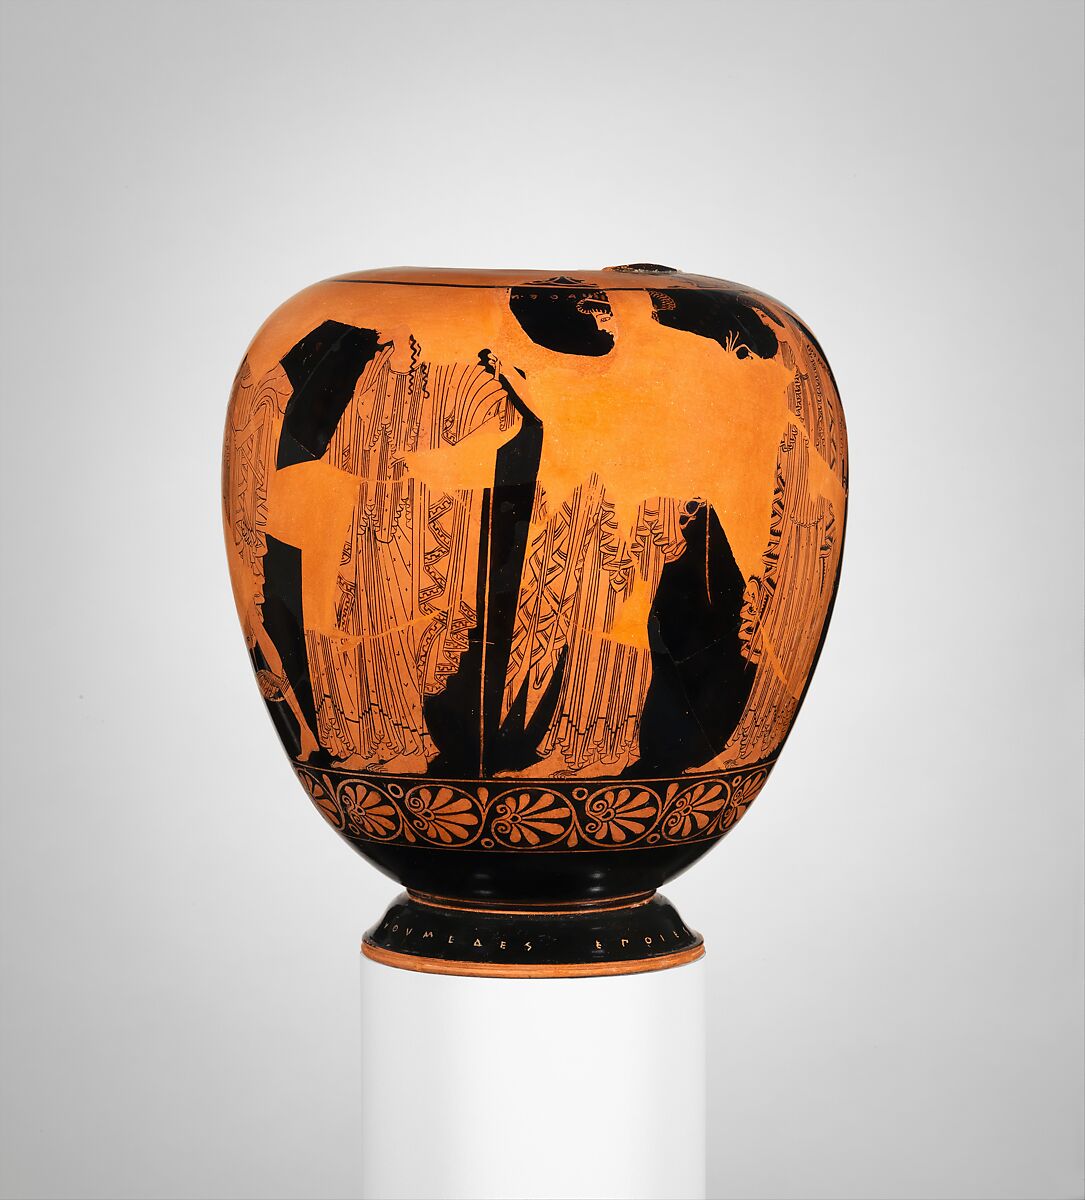 Terracotta oinochoe (jug), Euthymides, Potter, Terracotta, Greek, Attic